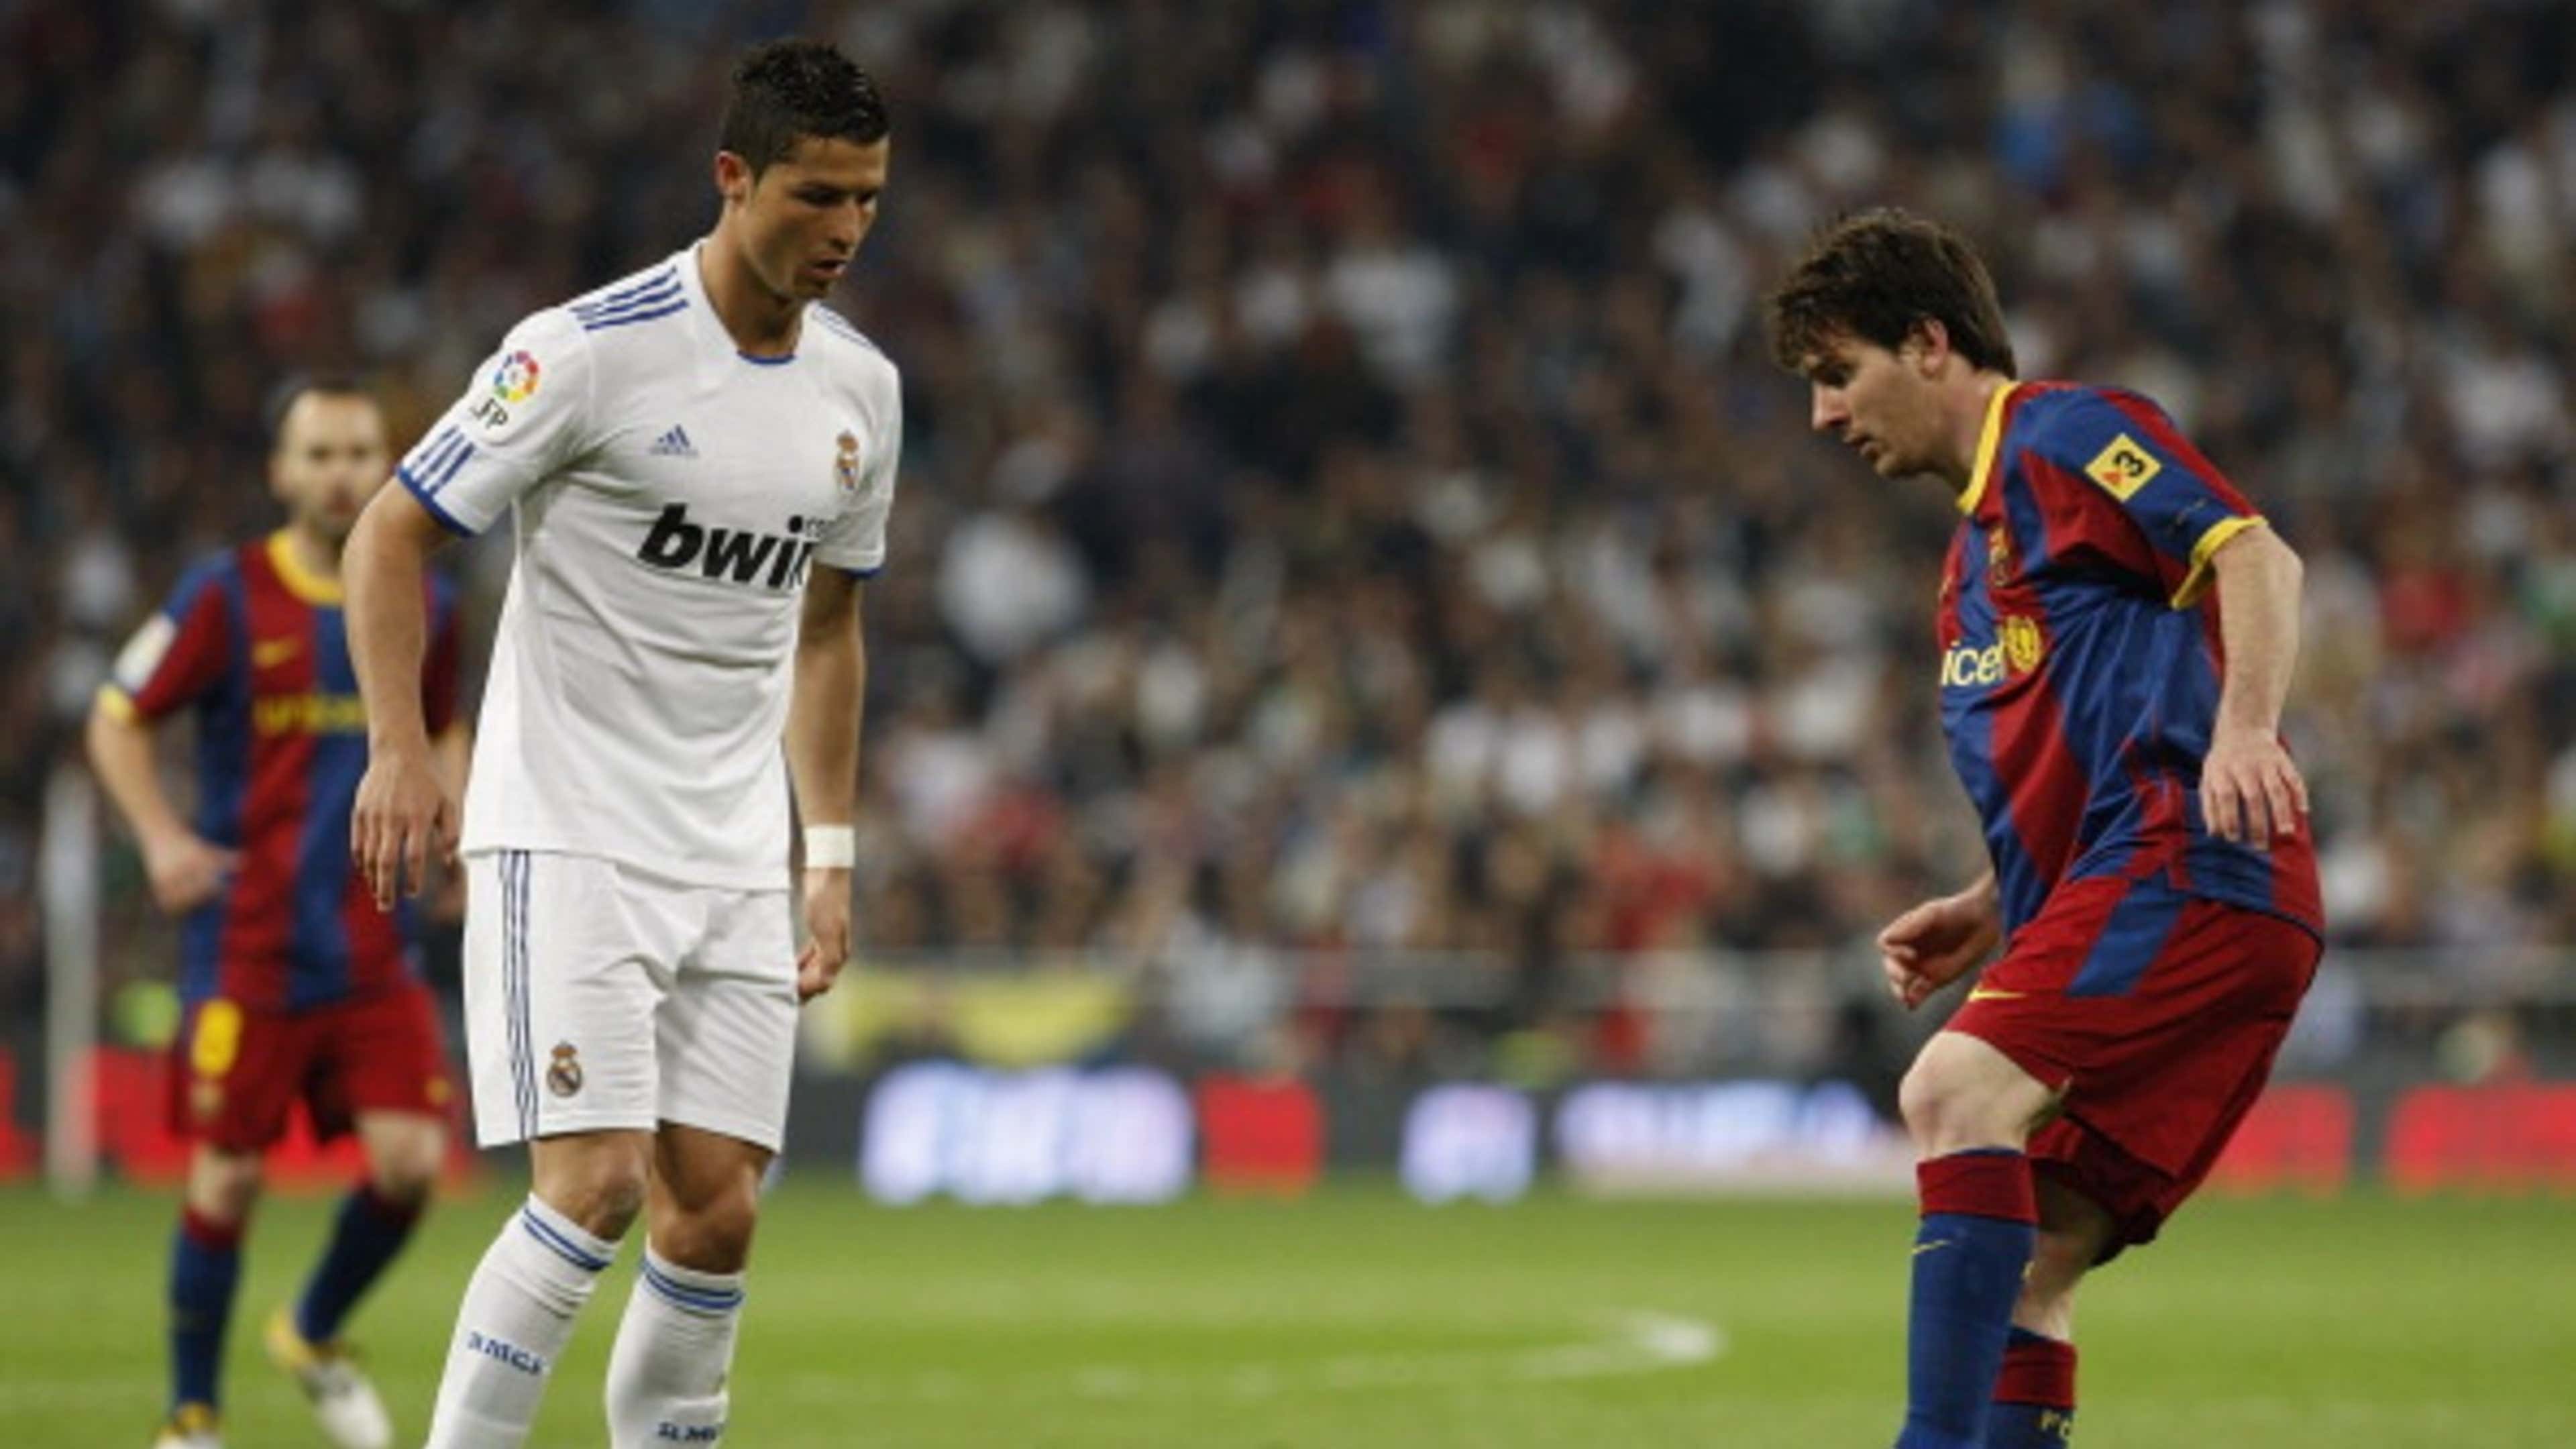 Cristiano Ronaldo vs Lionel Messi head to head: History of